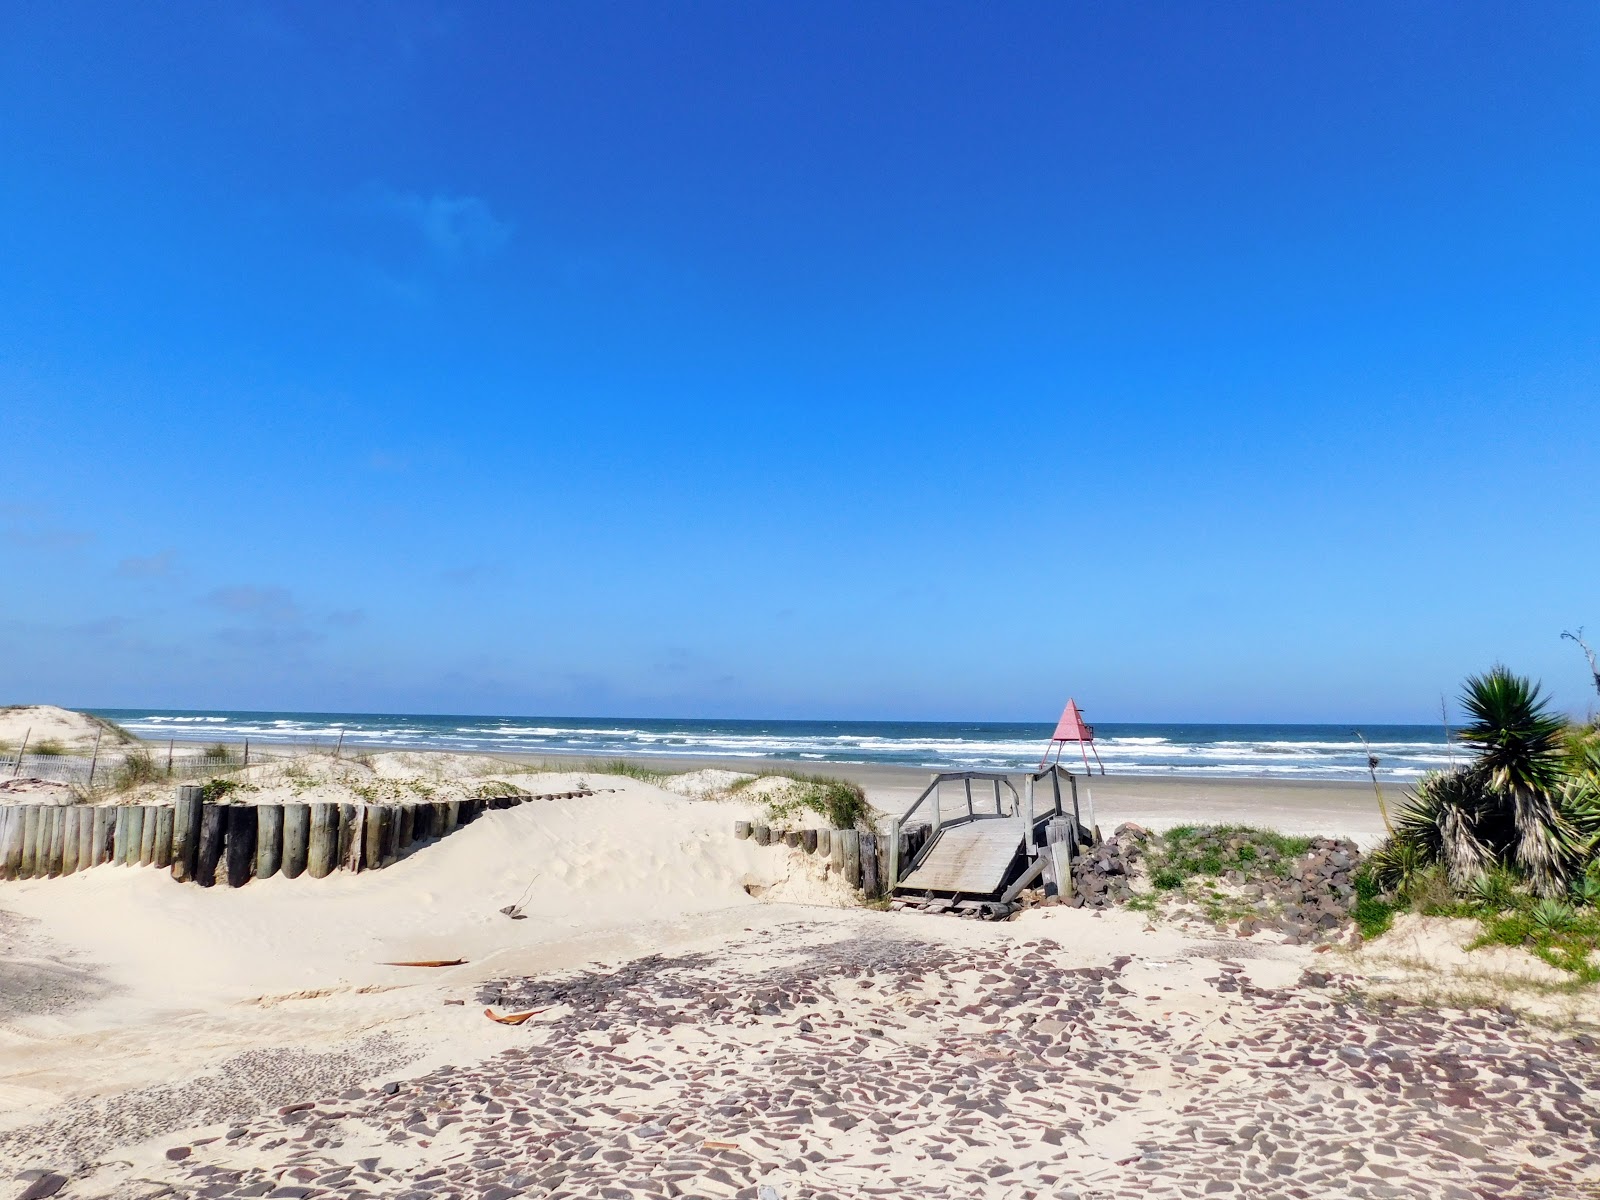 Praia Maristela'in fotoğrafı çok temiz temizlik seviyesi ile